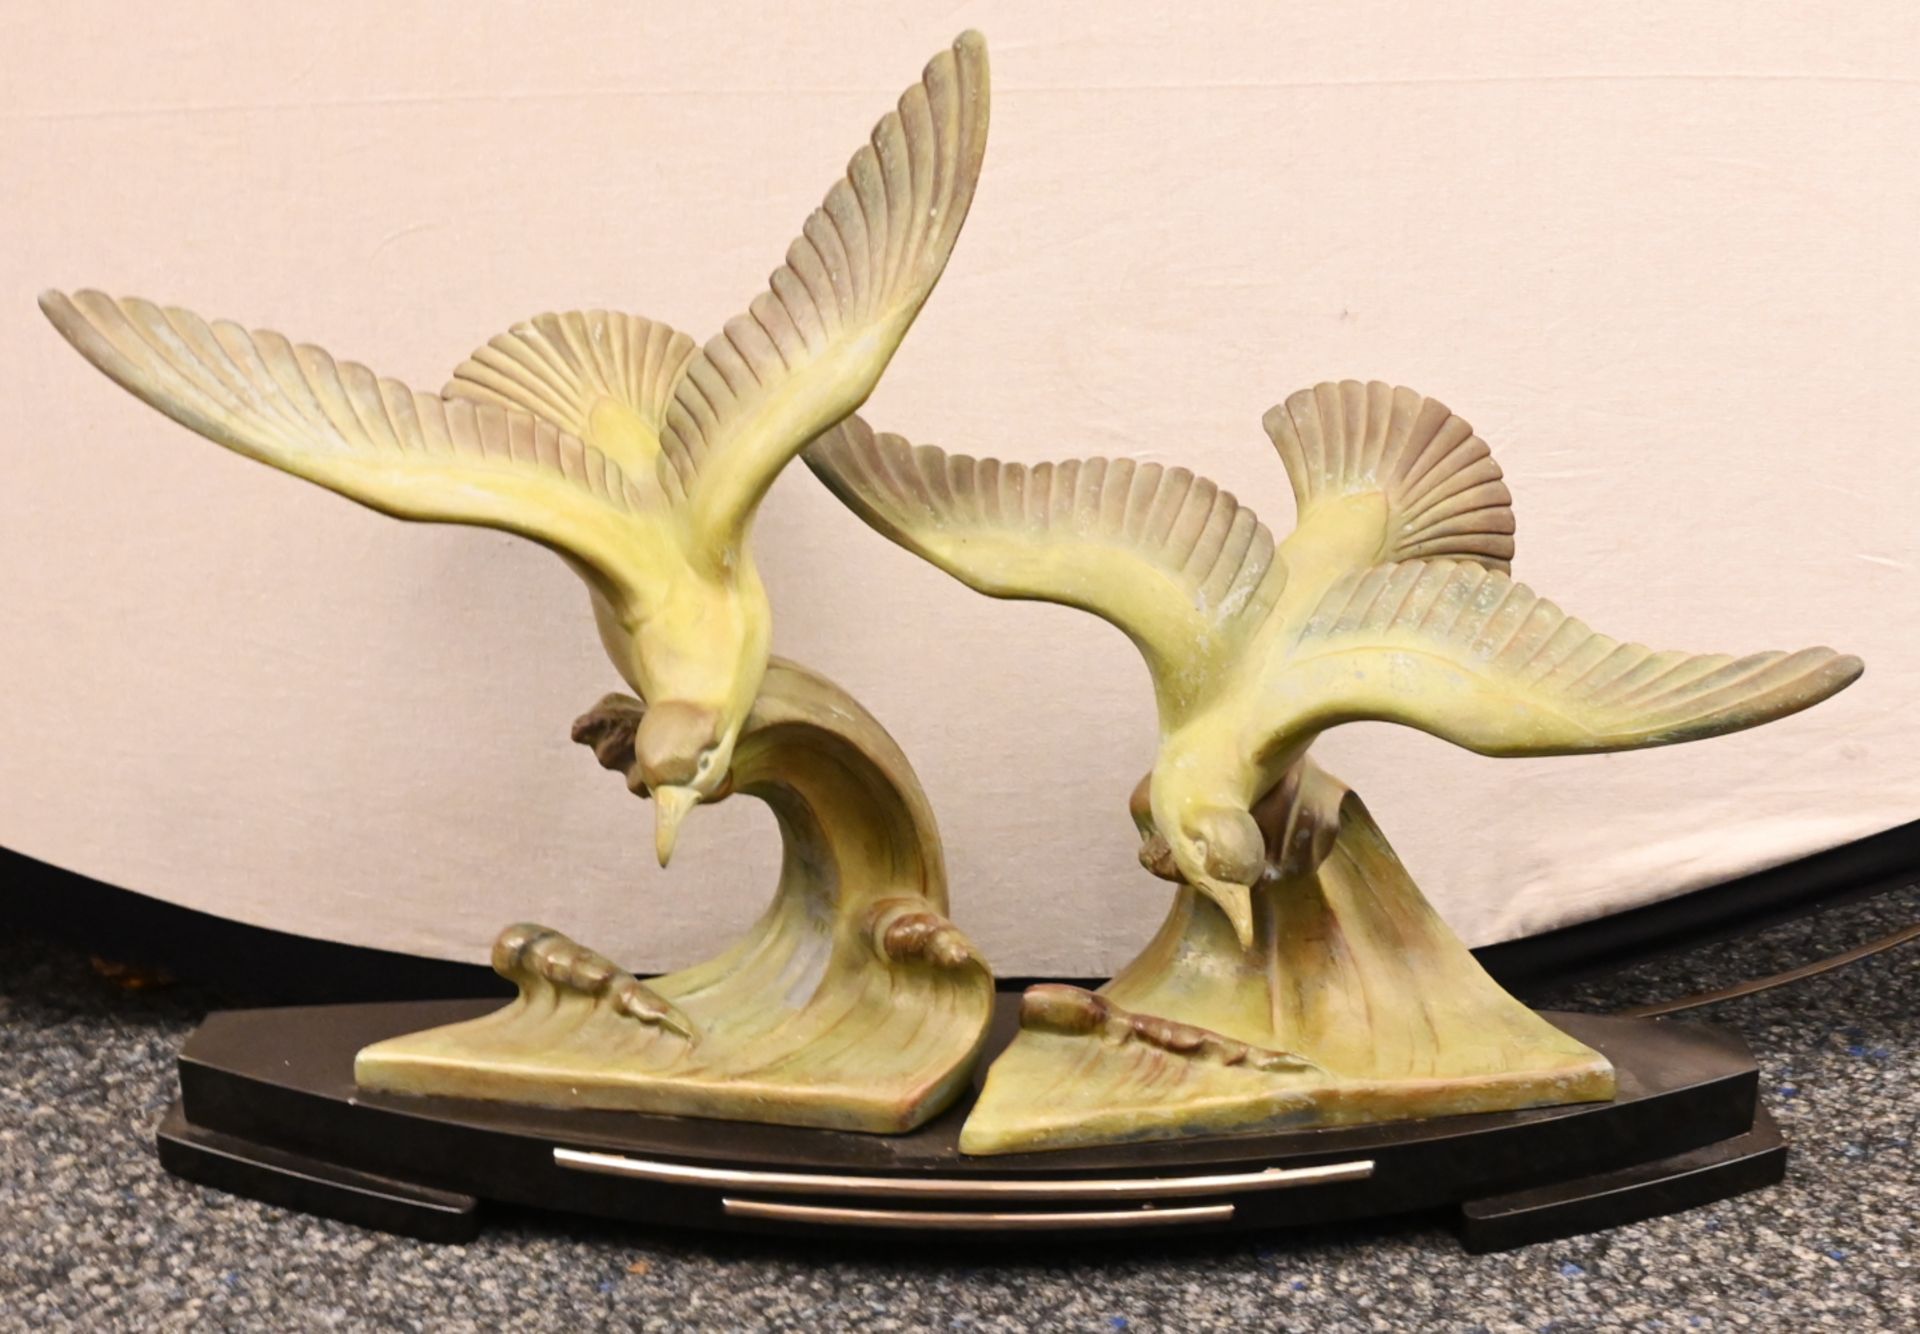 1 Figur Bronze grün patiniert "Storchenvogel Jabiru" Replik nach Rembrandt Bugatti, H ca. 33cm, - Bild 2 aus 2